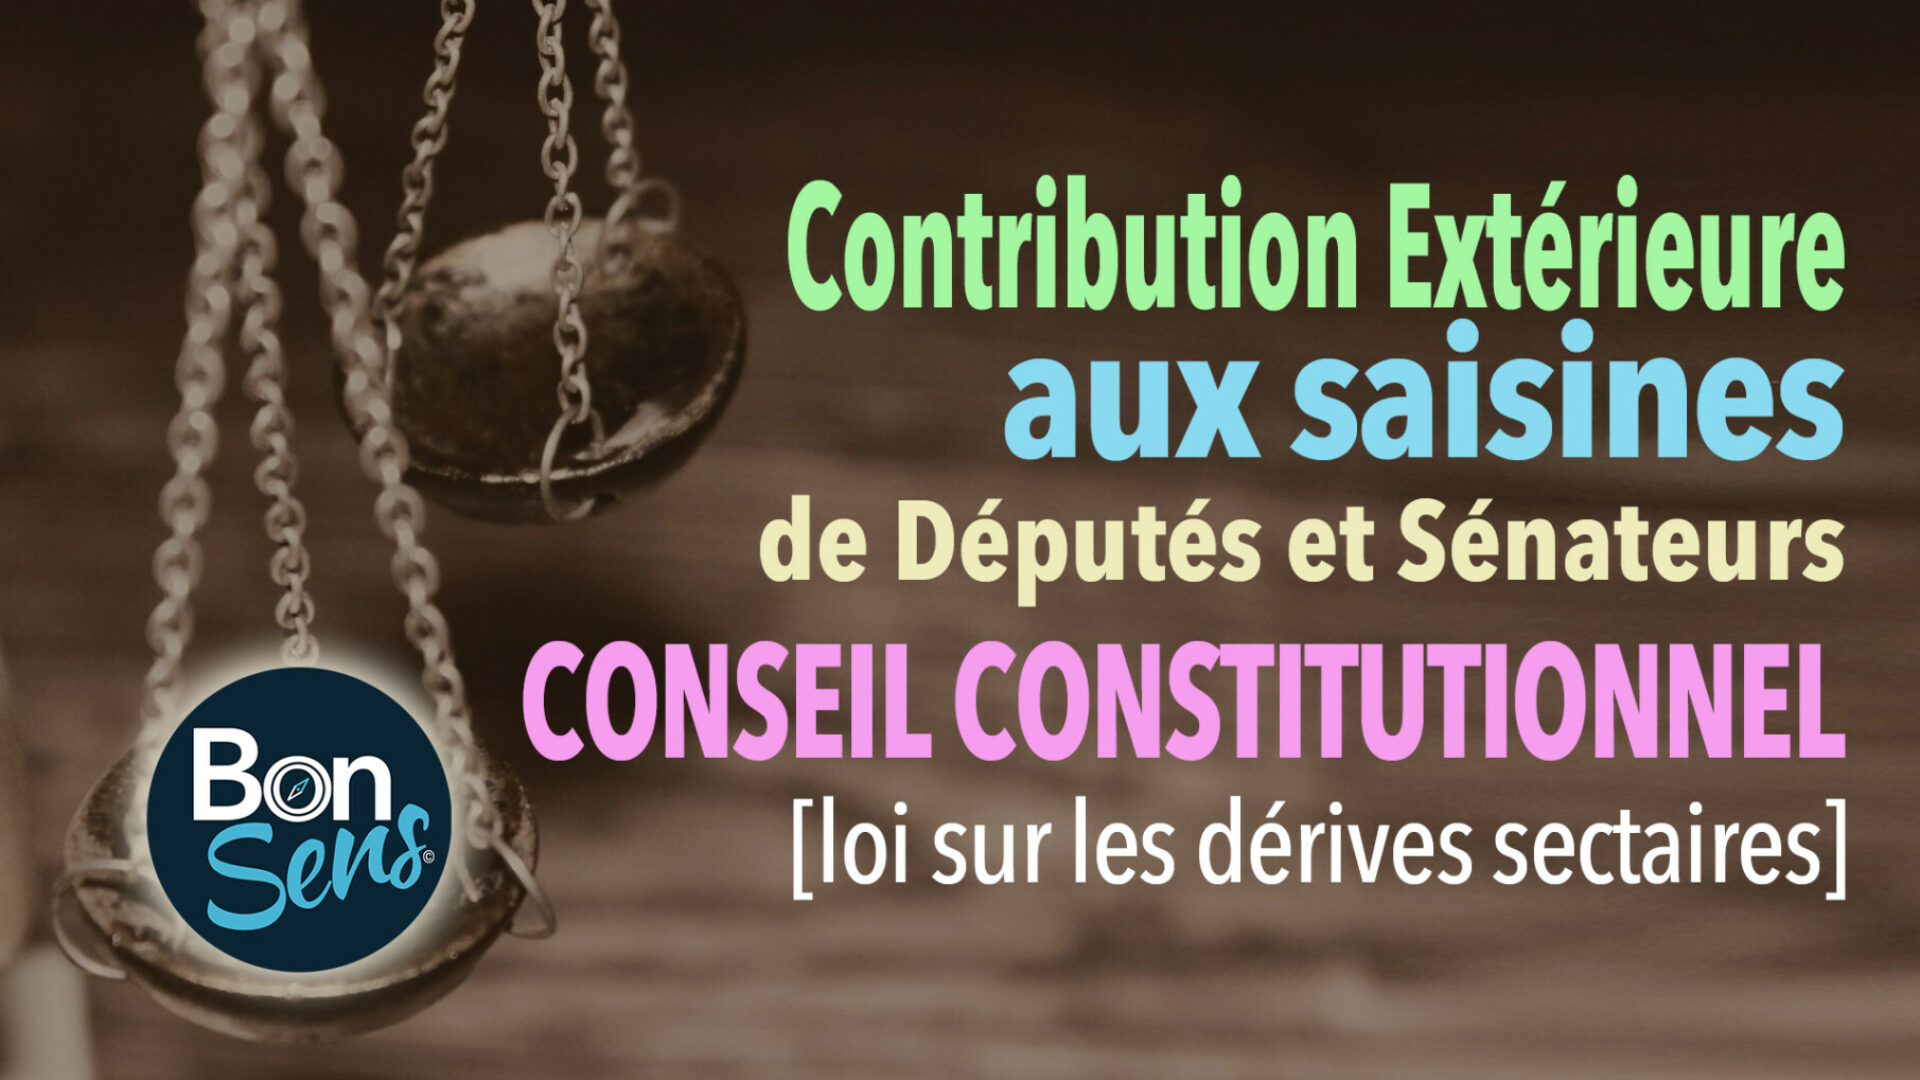 juridique-actions-bonsens-org-contibution--exterieure-saine-CC-loi-derives-sectaires